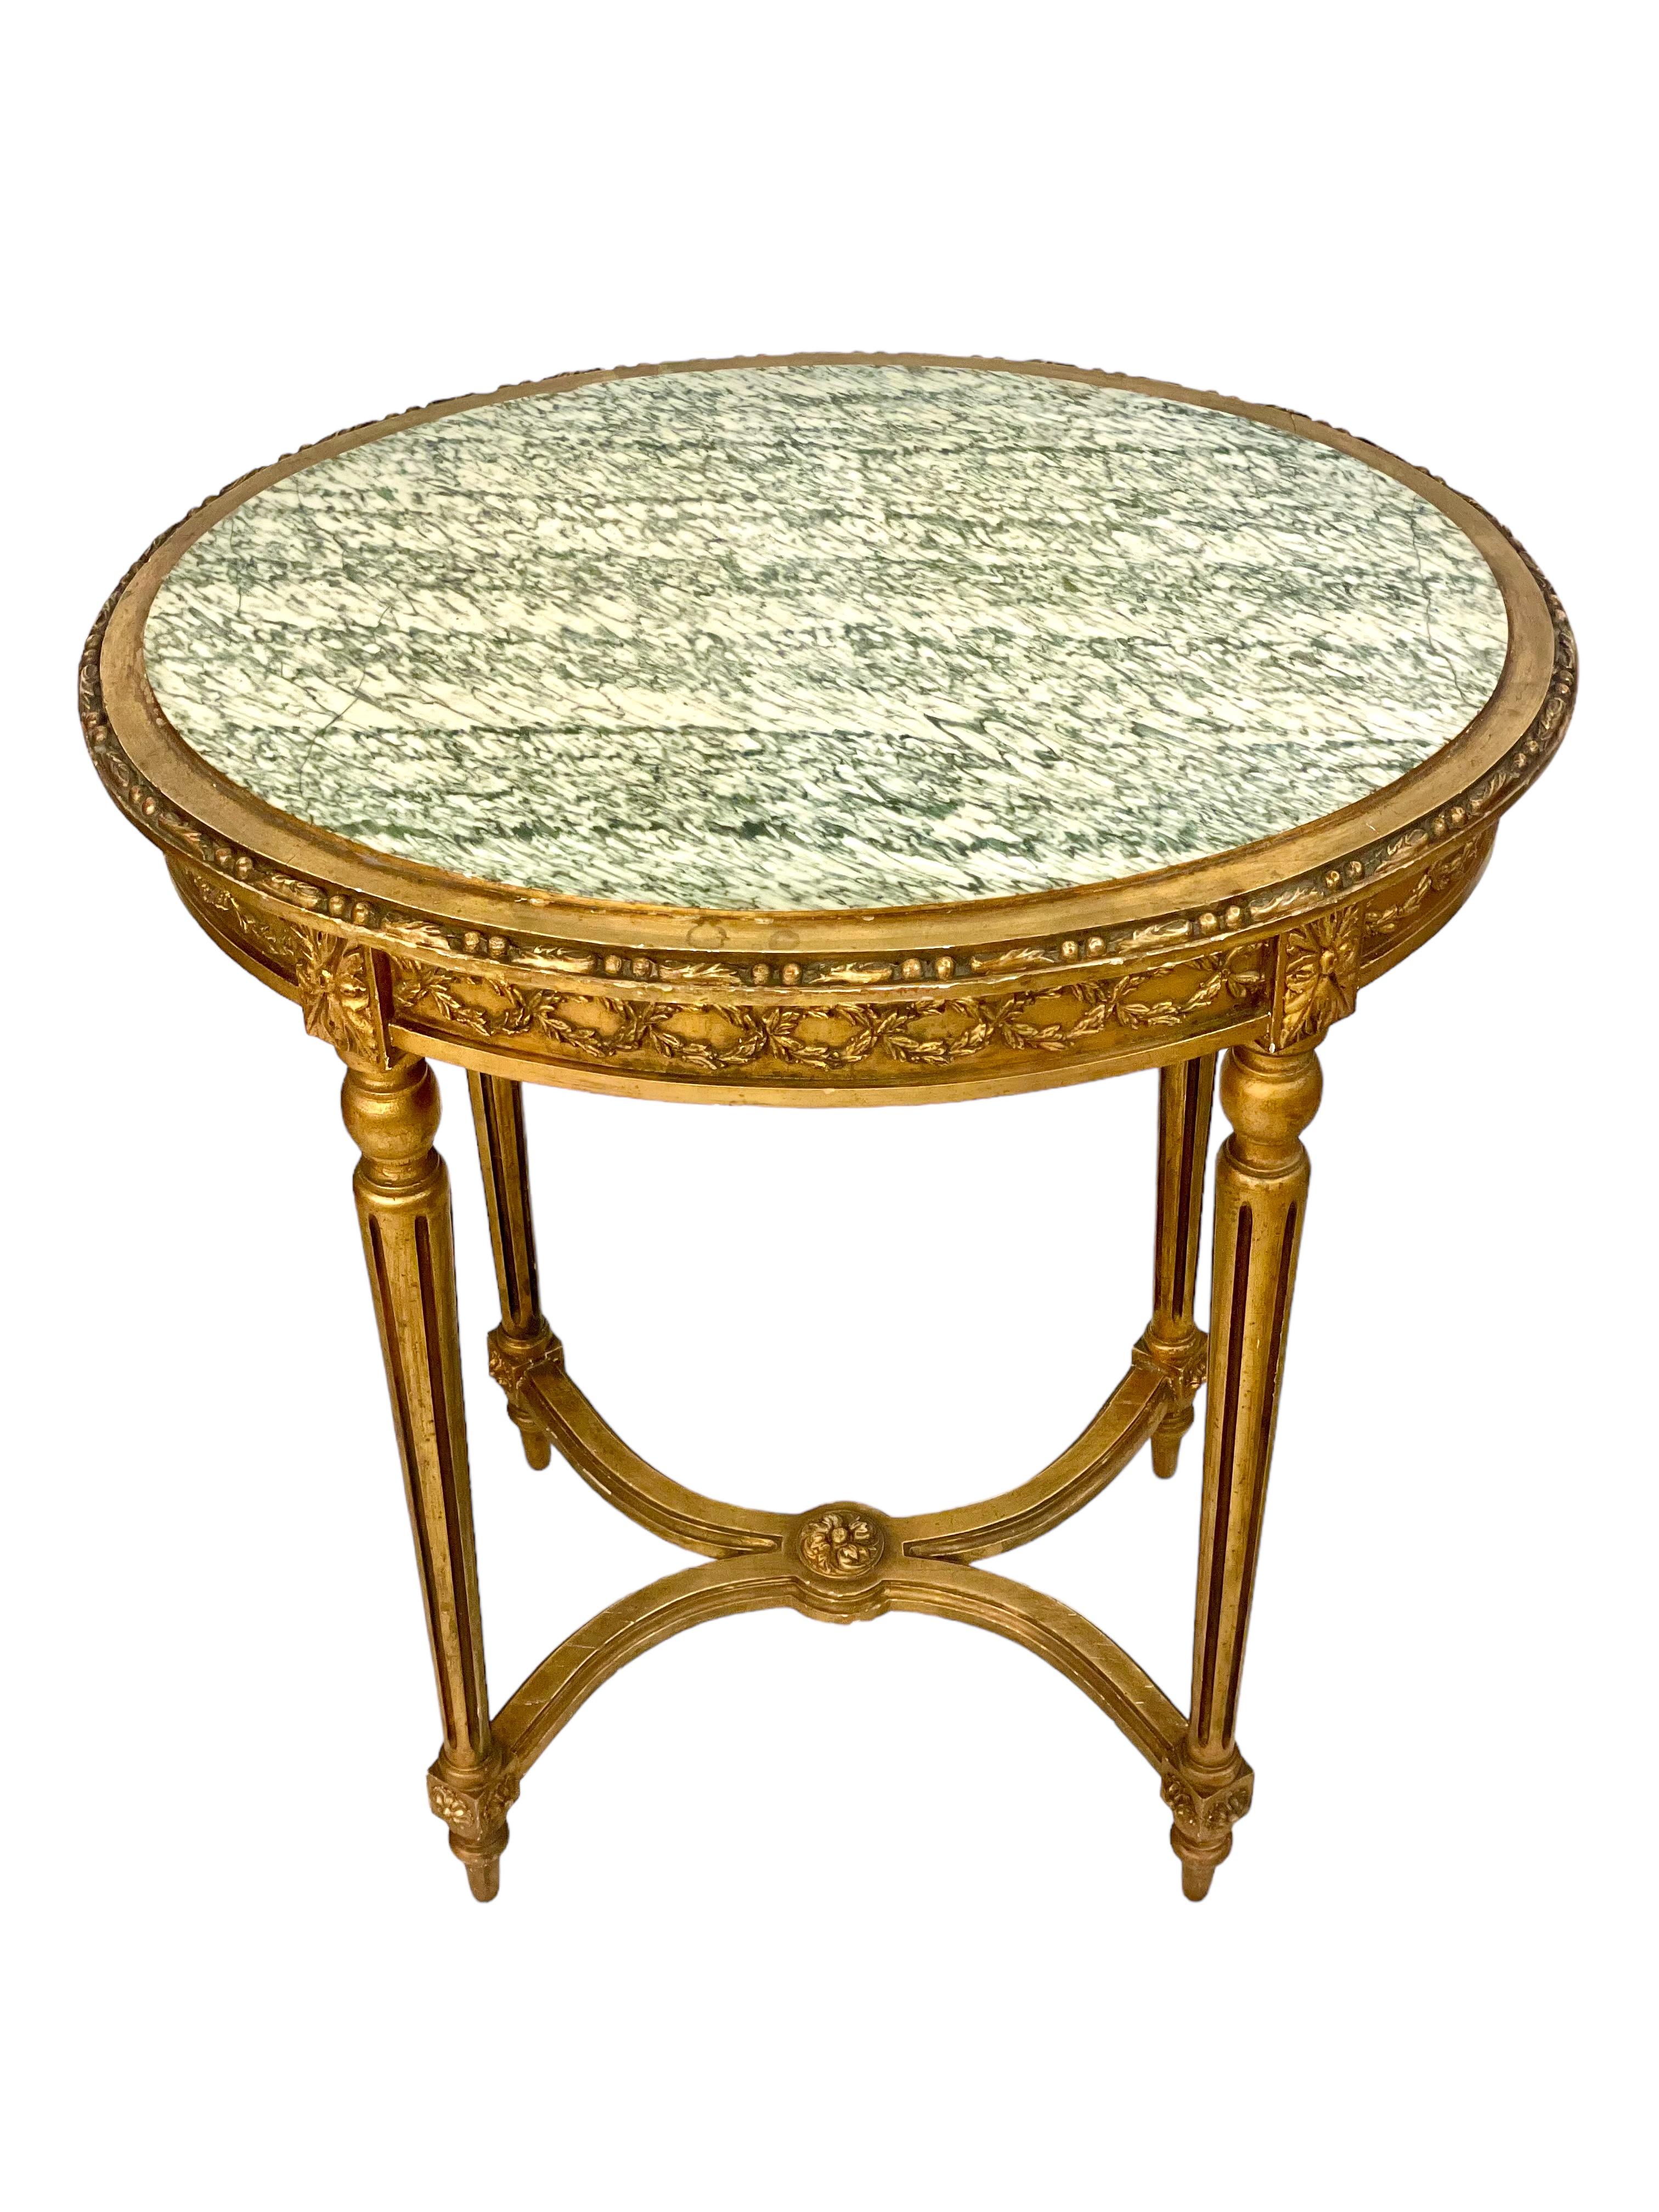 Ein sehr dekorativer Napoleon-III-Mittel- oder Beistelltisch im Louis-XVI-Stil aus geschnitztem und vergoldetem Holz mit einer ovalen Platte aus grau-grün geädertem Marmor. Dieser hübsche kleine Tisch stammt aus dem 19. Jahrhundert und zeichnet sich